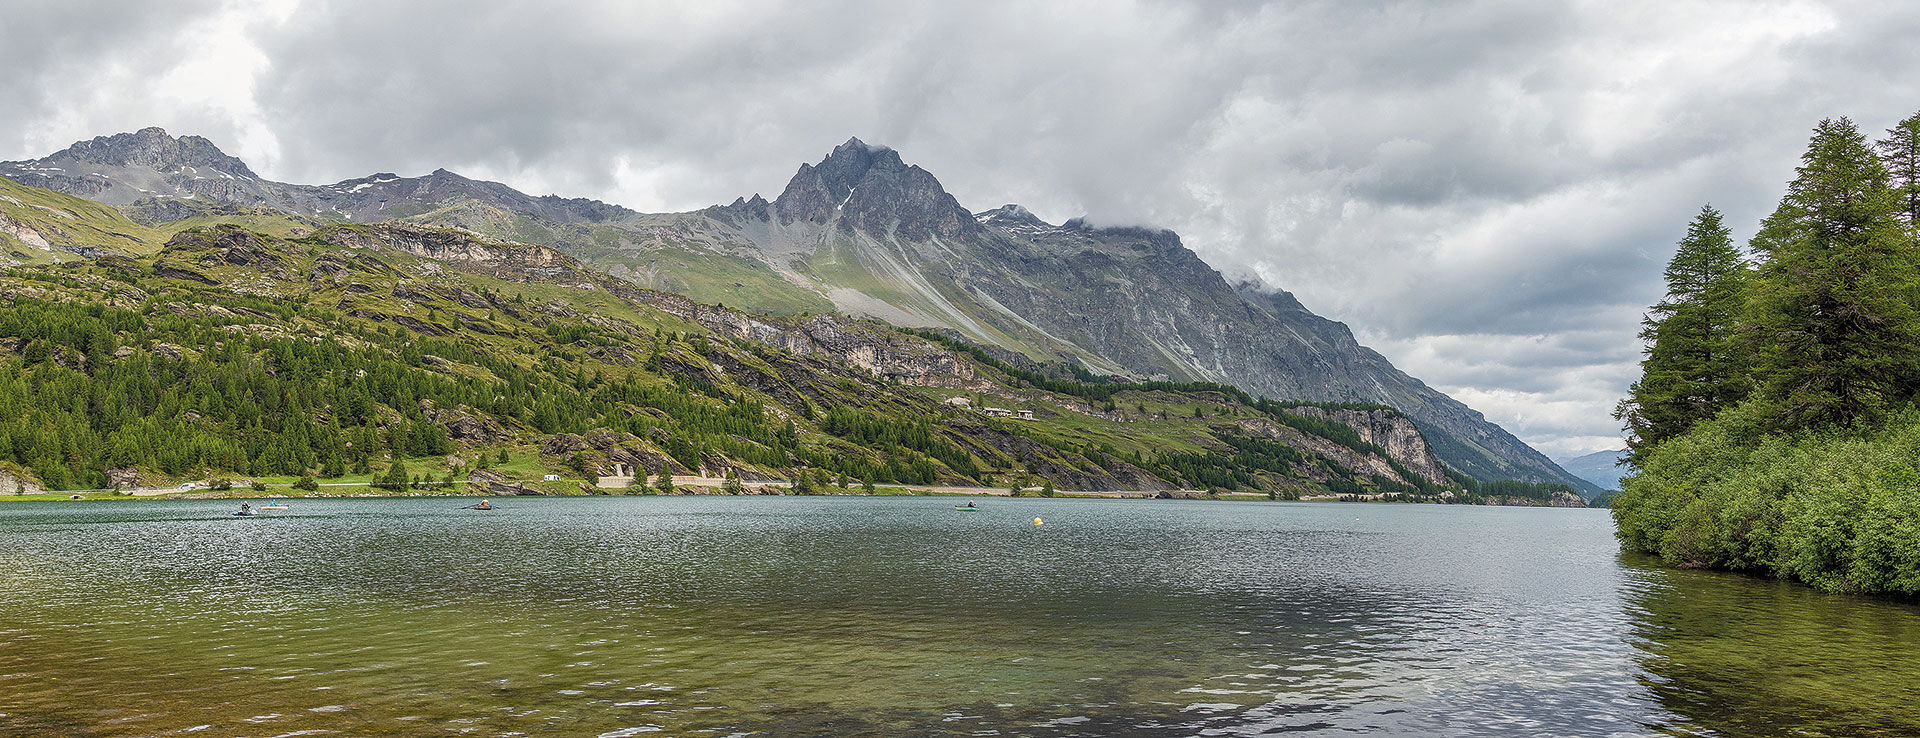  An den Oberengadiner Seen kommt man als Boots- oder Uferfischer in jedem Fall in den Genuss eines ausserordentlich schönen Panoramas, egal ob die Wildfische gerade beissen oder nicht. © André Suter  